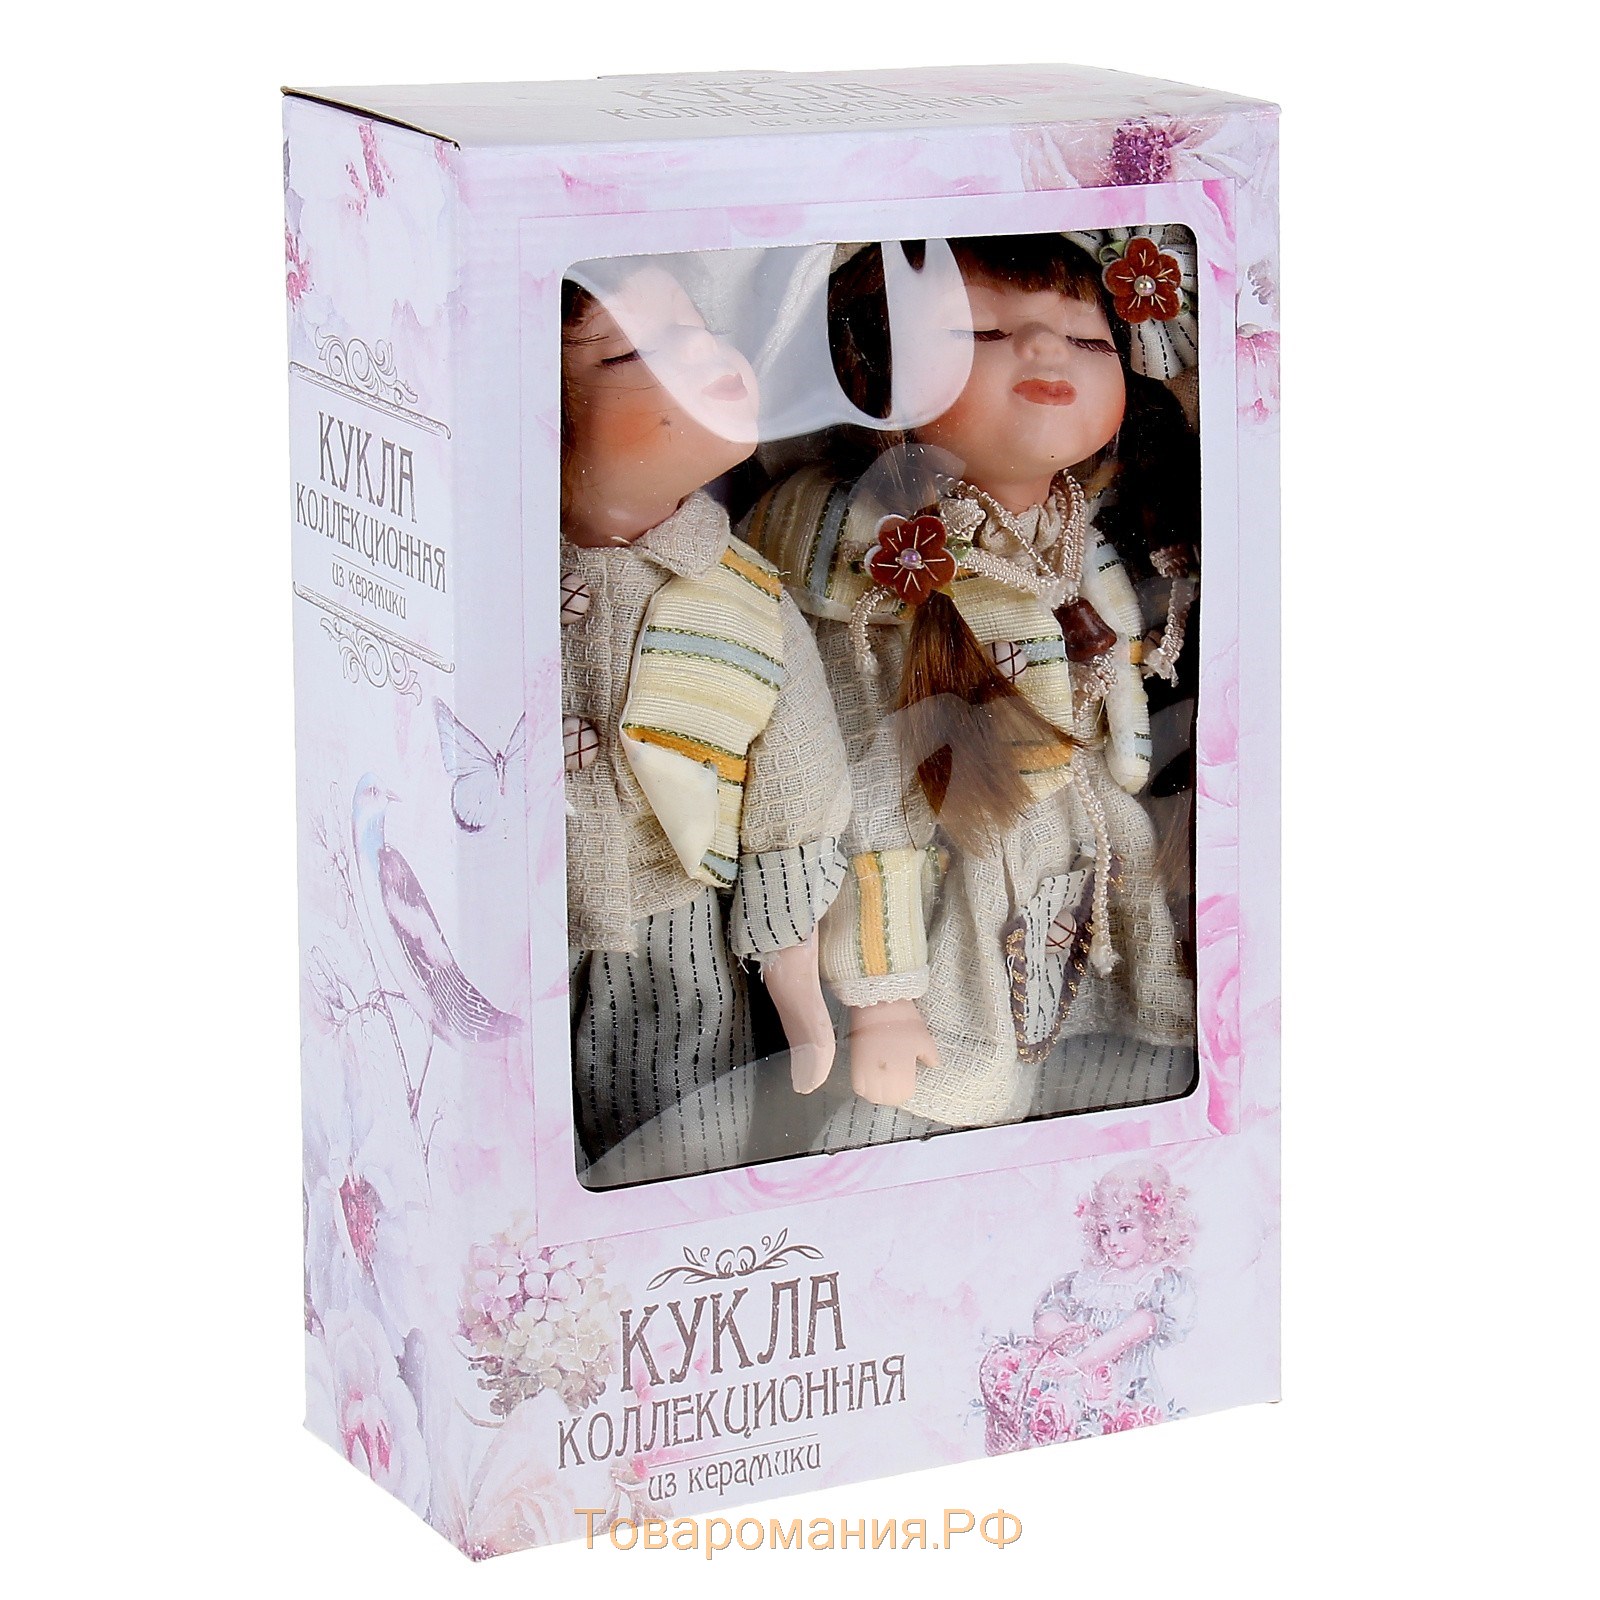 Кукла коллекционная "Поцелуй пары в белом наряде" в наборе 2 шт